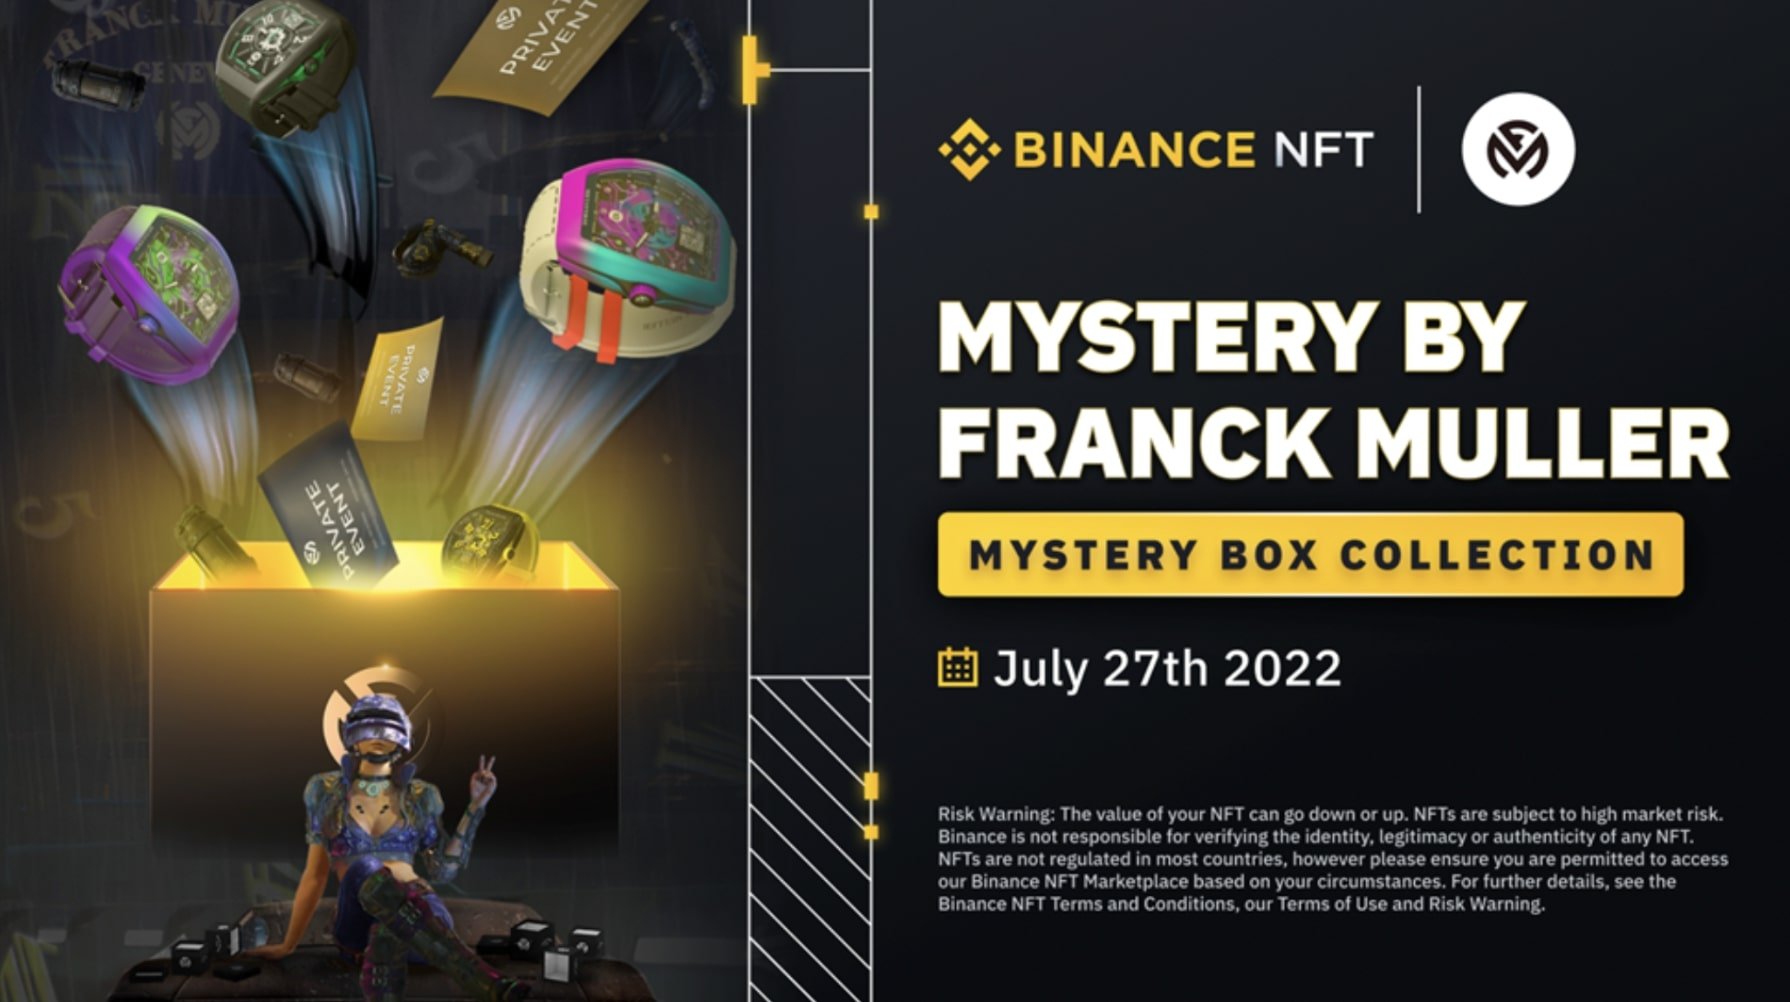 Franck Muller x Binance NFT collection